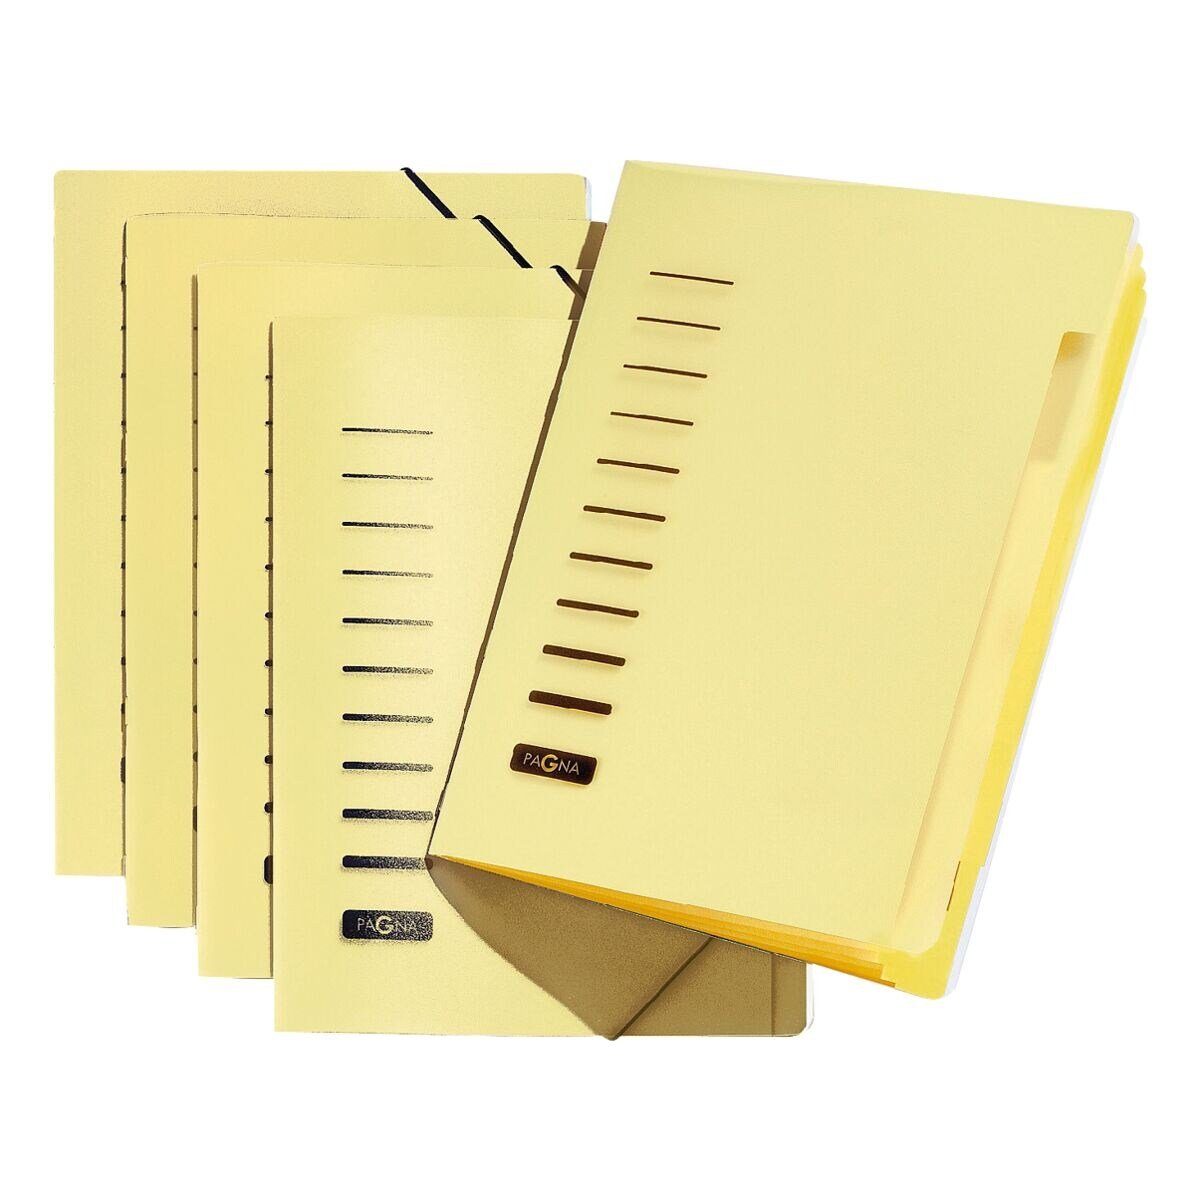 PAGNA Organisationsmappe, Ordnungsmappe mit 6 Fächern, farbiges Register, A4